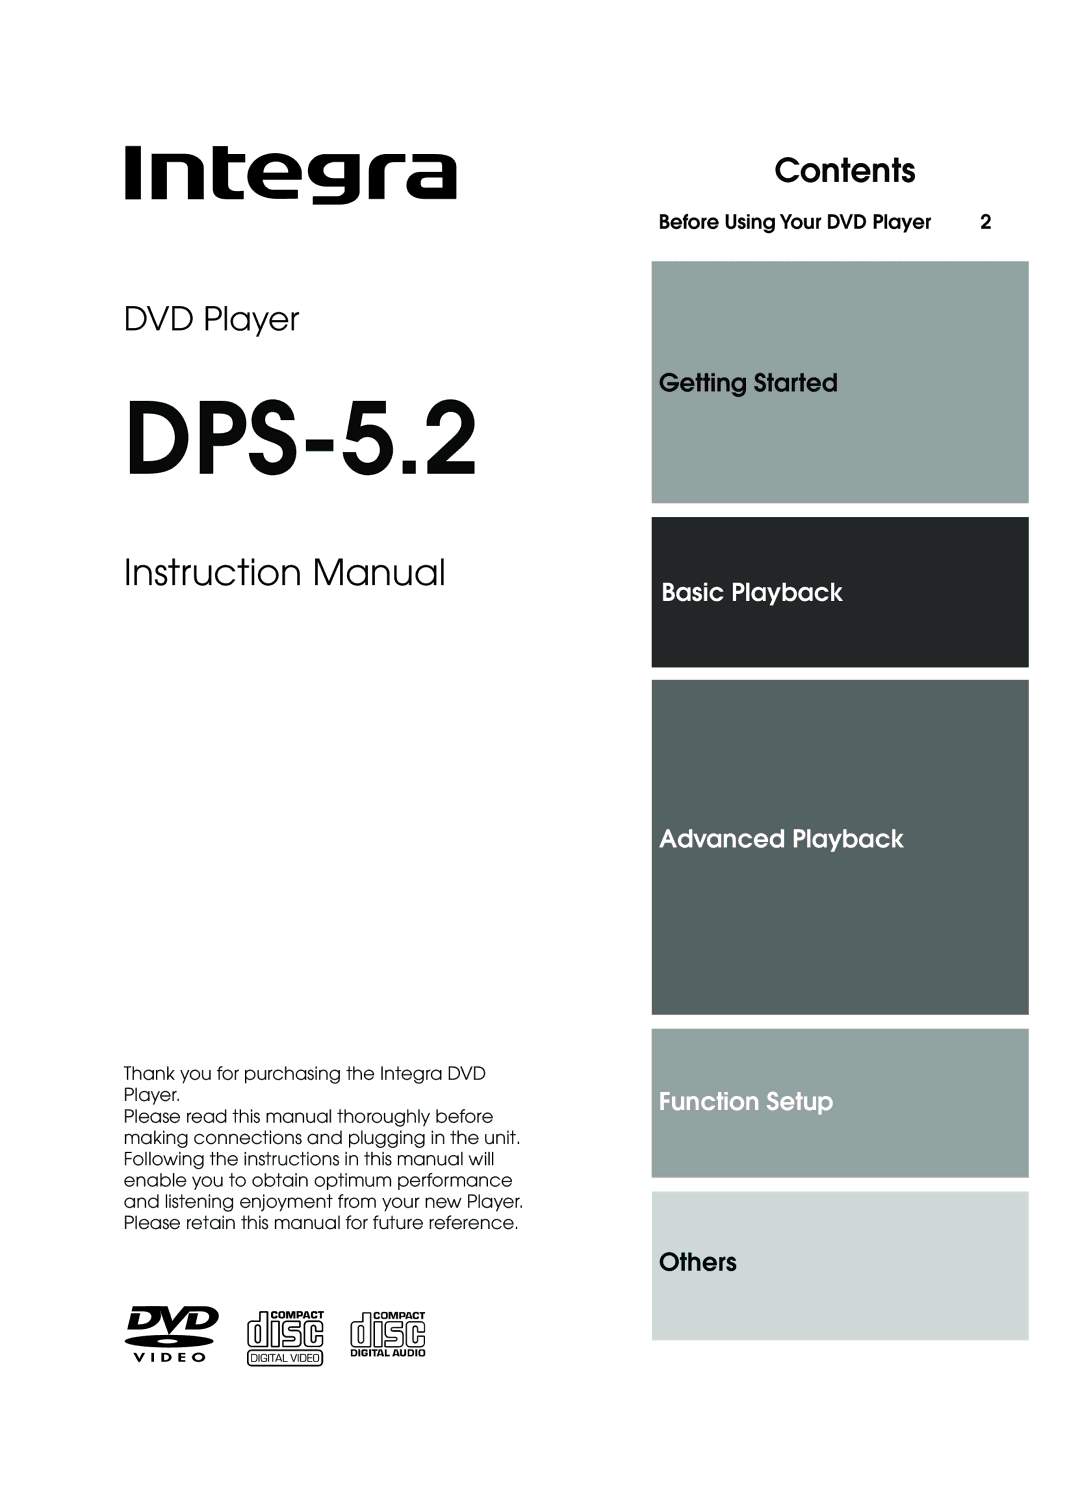 Integra DPS-5.2 instruction manual 